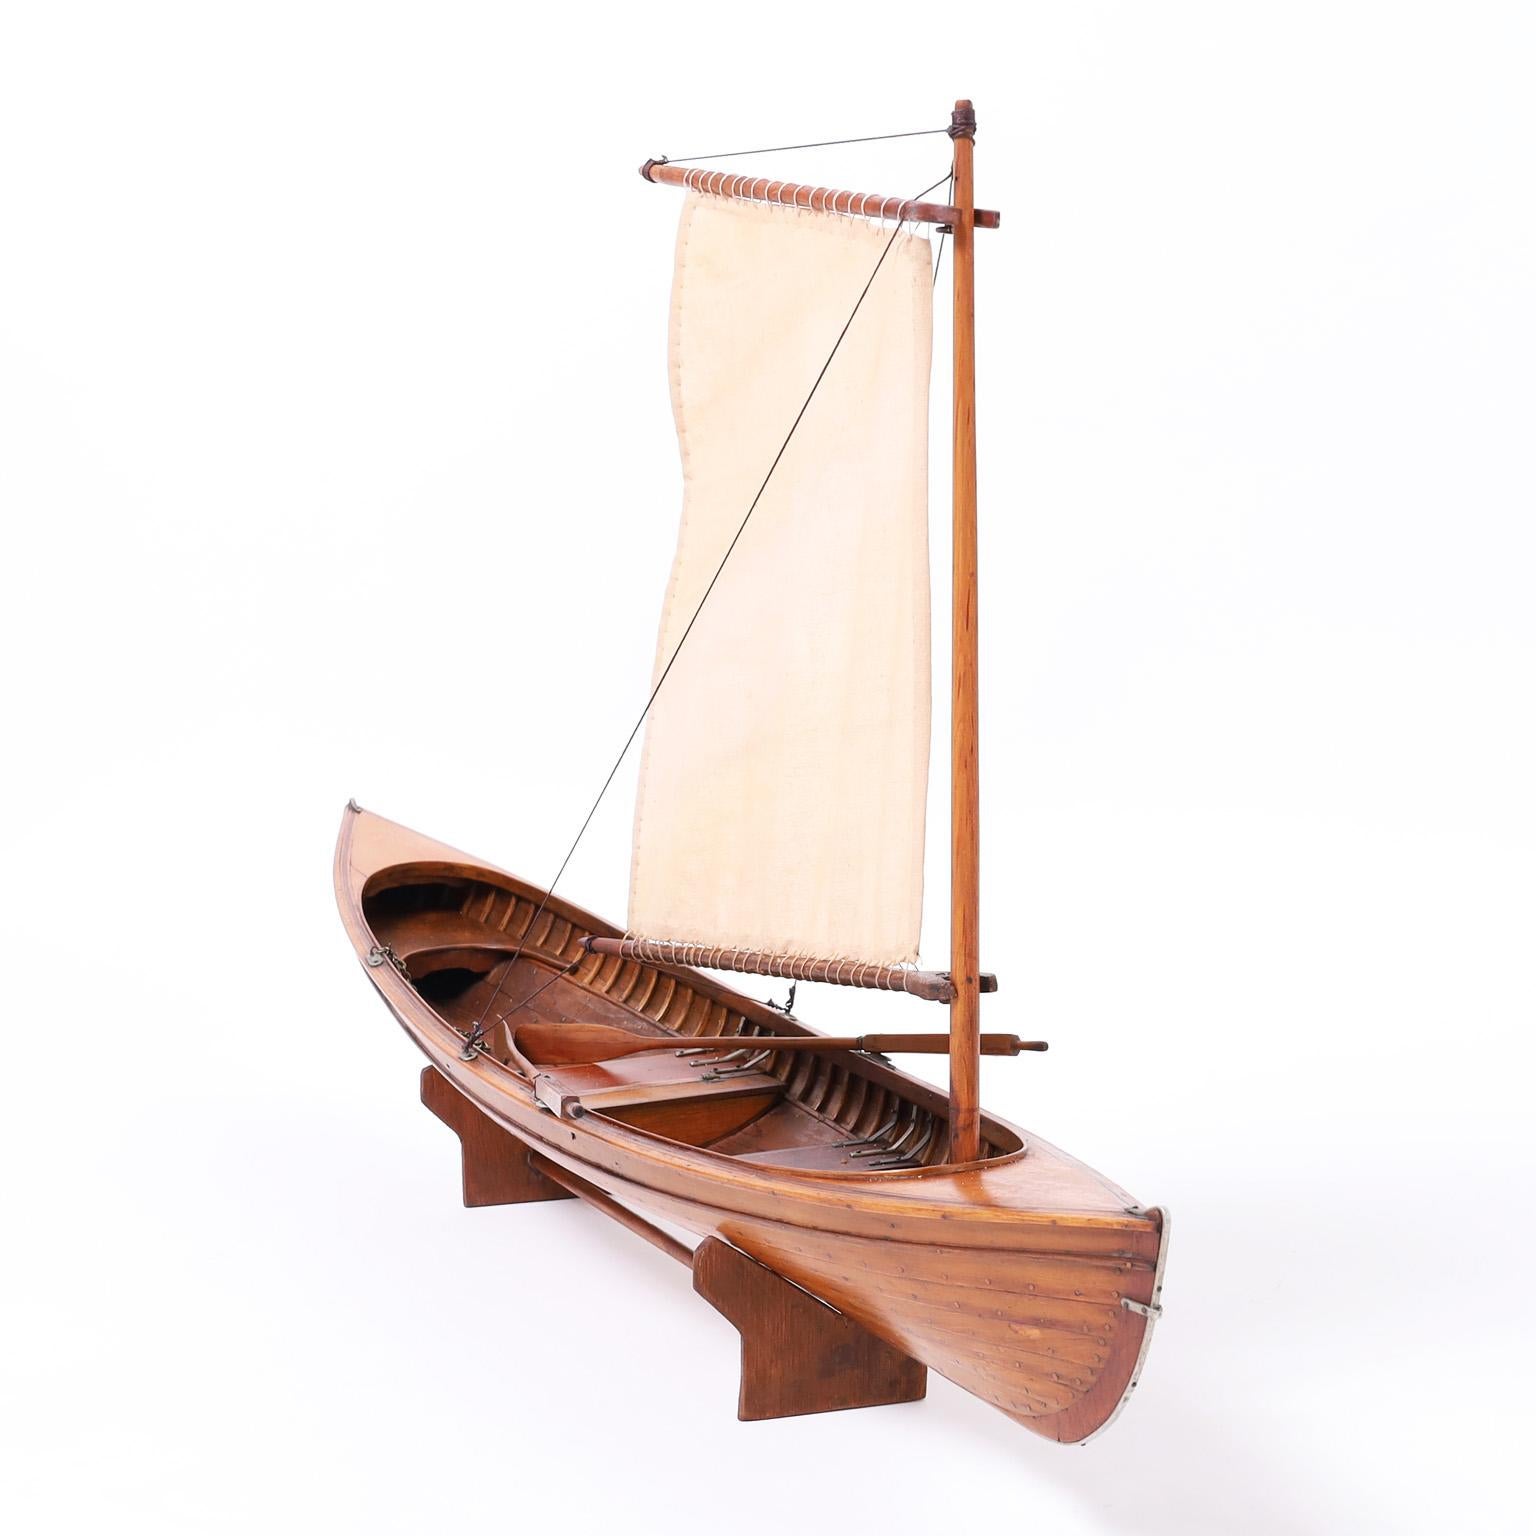 Großartiges antikes englisches Edwardian Thames river rowing skiff Modell mit Verkauf, handgefertigt in Mahagoni mit anspruchsvoller Genauigkeit. Präsentiert auf einem handgefertigten Holzsockel.